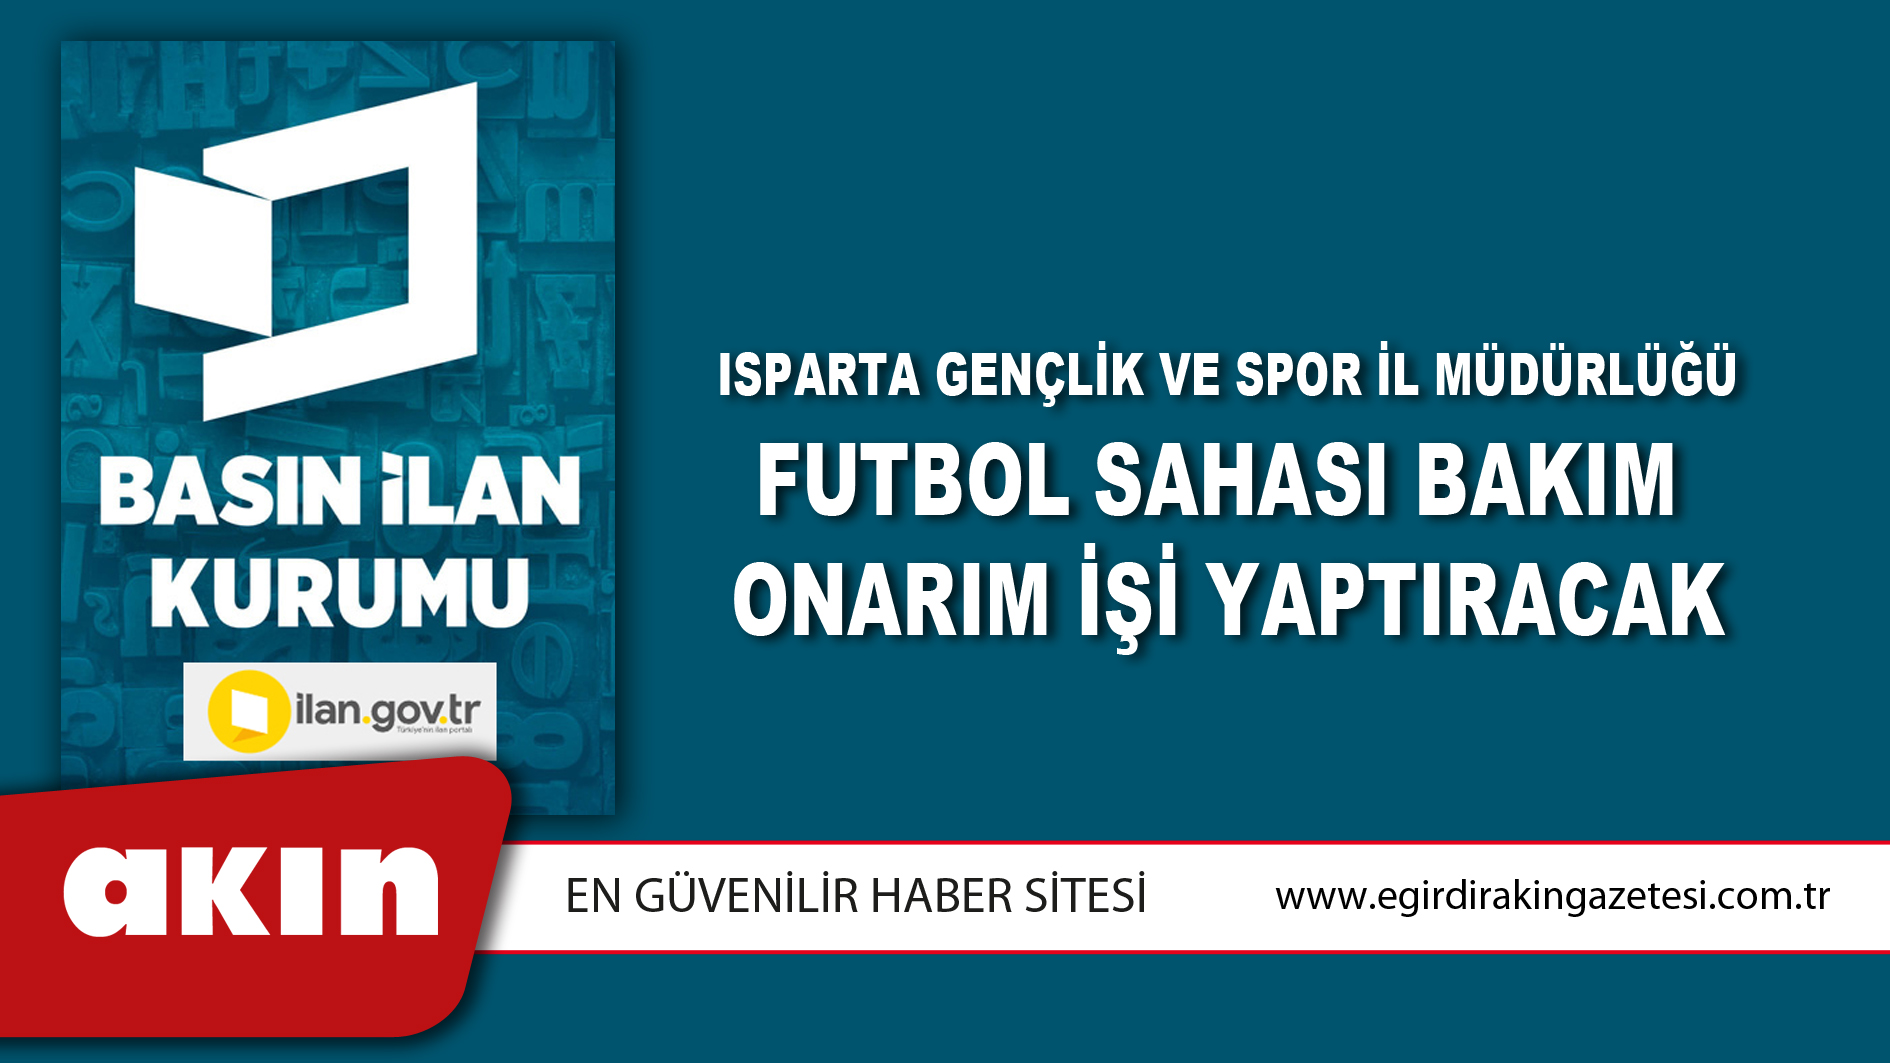 Isparta Gençlik Ve Spor İl Müdürlüğü Futbol Sahası Bakım Onarım İşi Yaptıracak